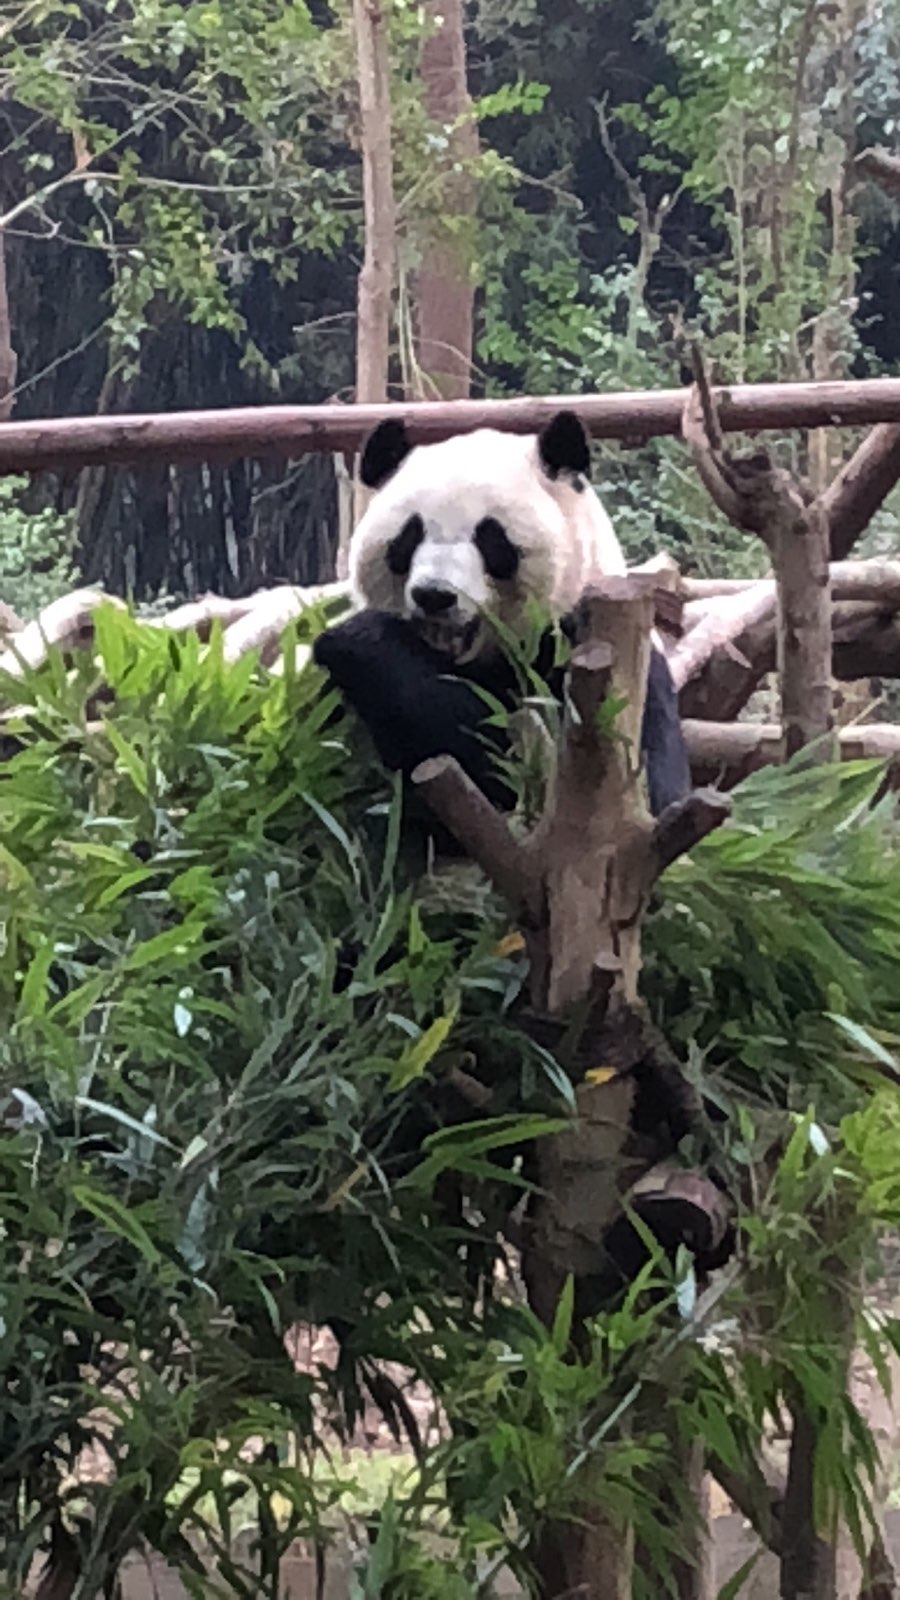 熊猫特别可爱，很可惜去的时候没有开放熊猫保育员计划，没有预约到摸熊猫，